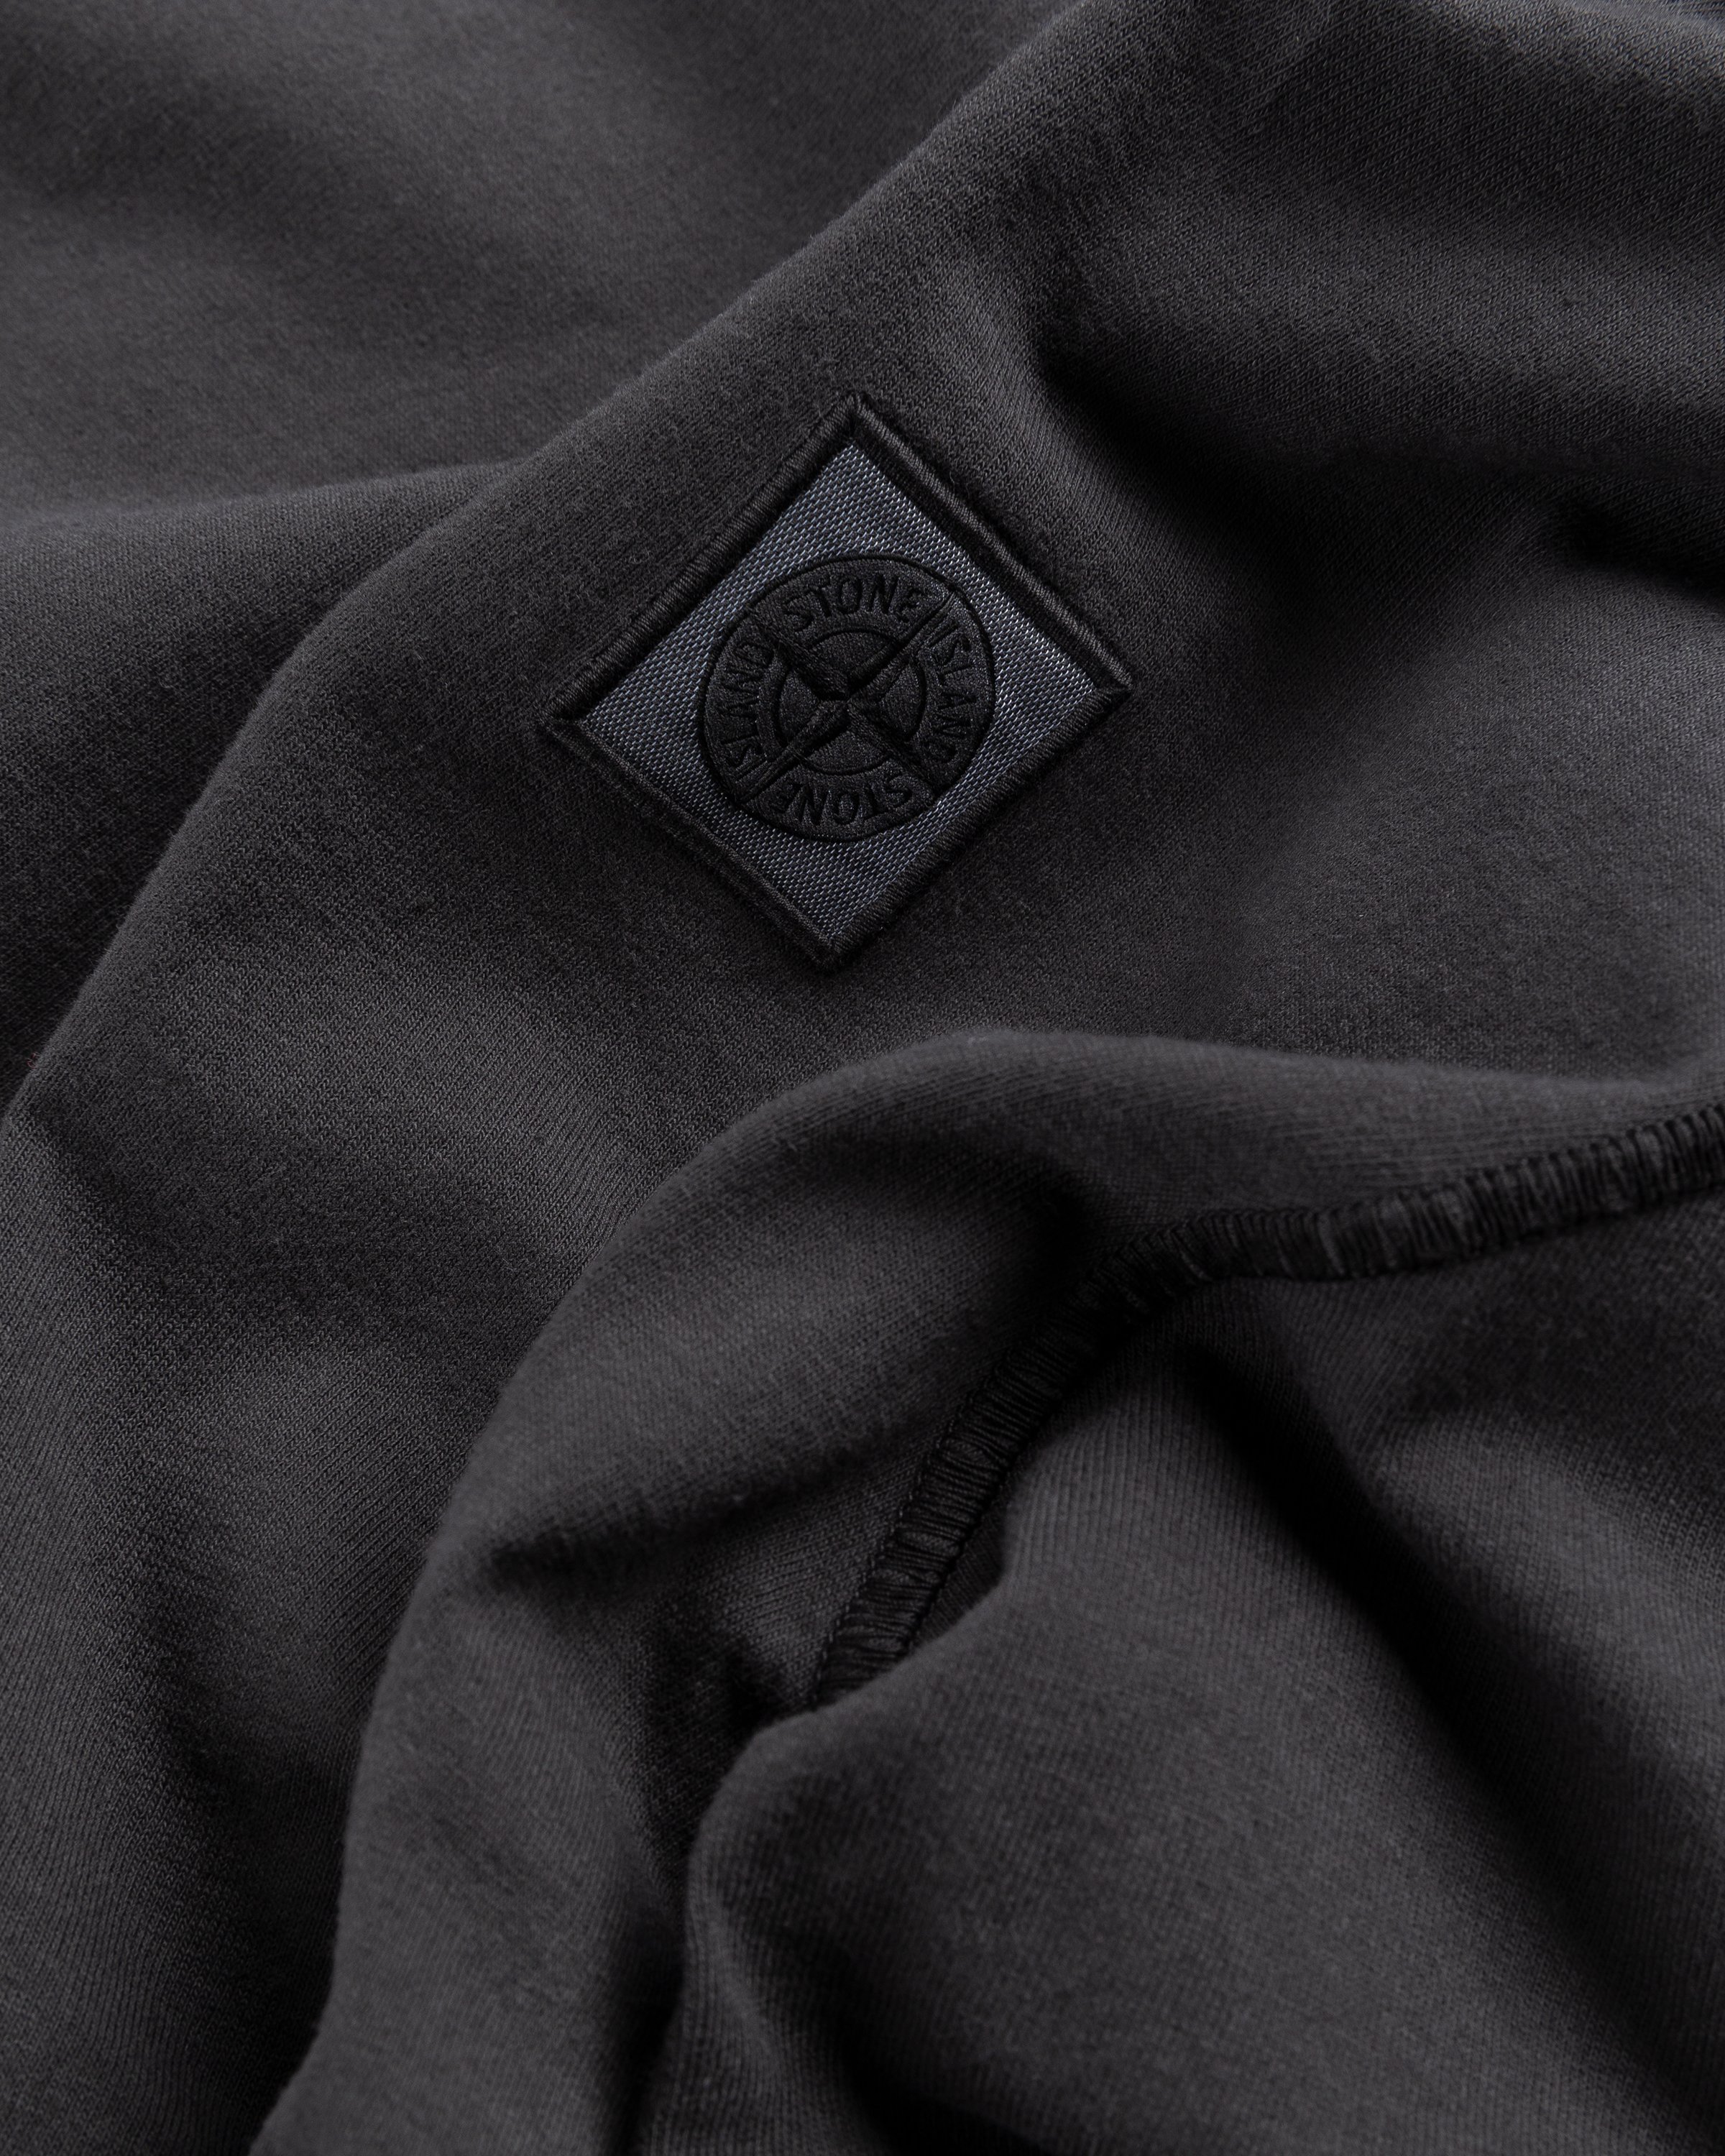 Stone Island - Fissato Longsleeve T-Shirt Charcoal - Clothing - Grey - Image 5